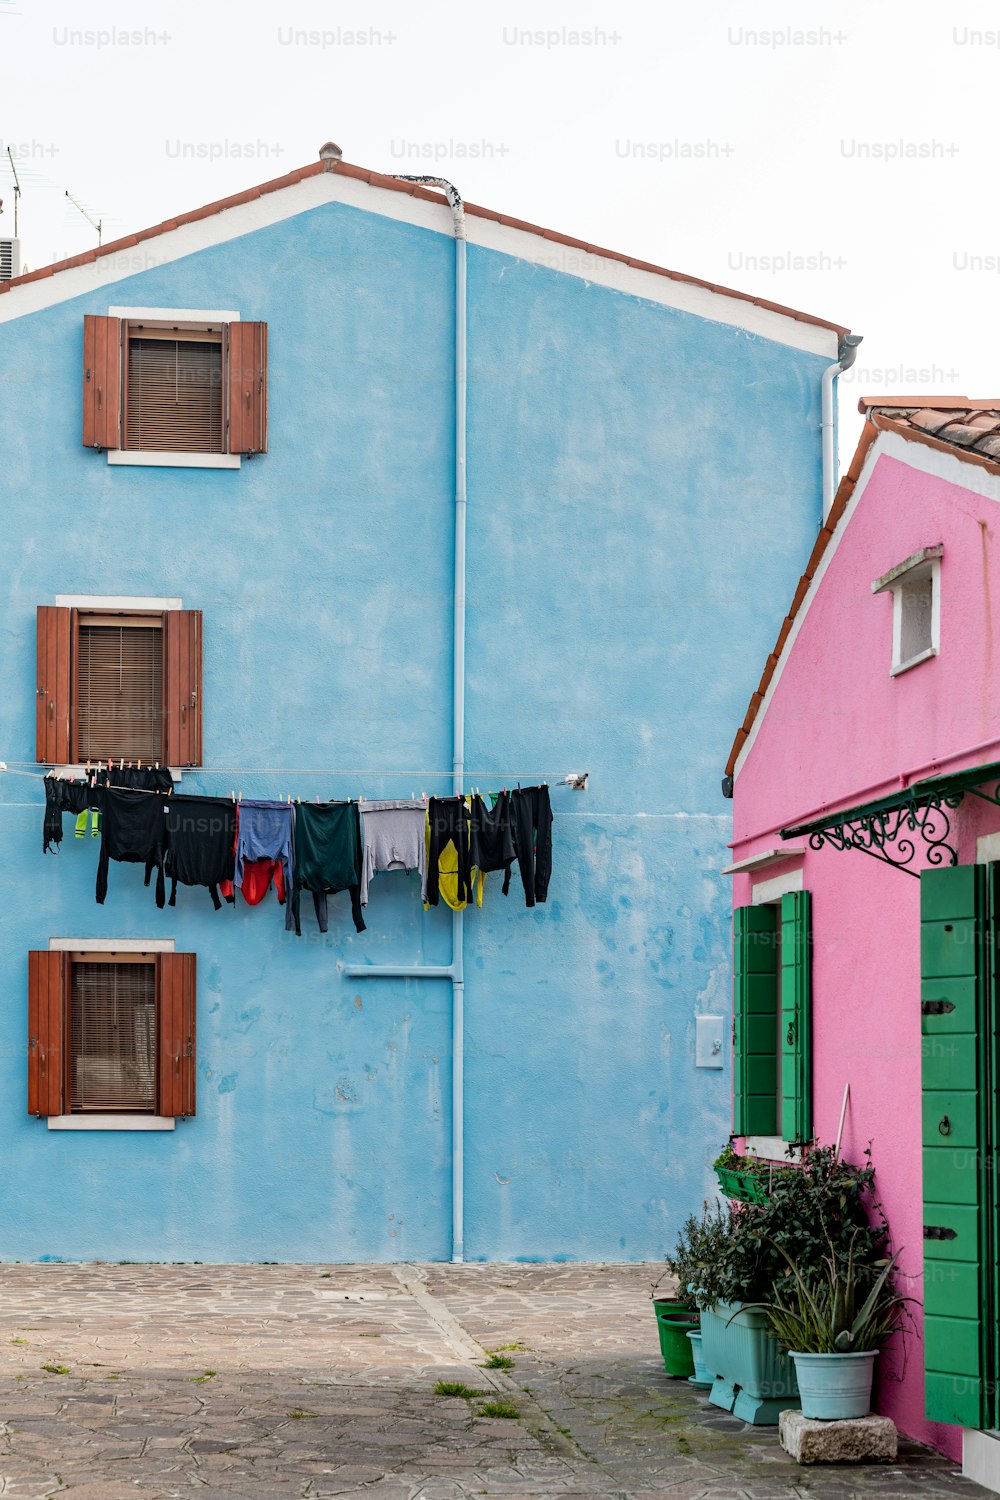 Kleidung, die zum Trocknen an einer Wäscheleine vor einem blauen Gebäude hängt